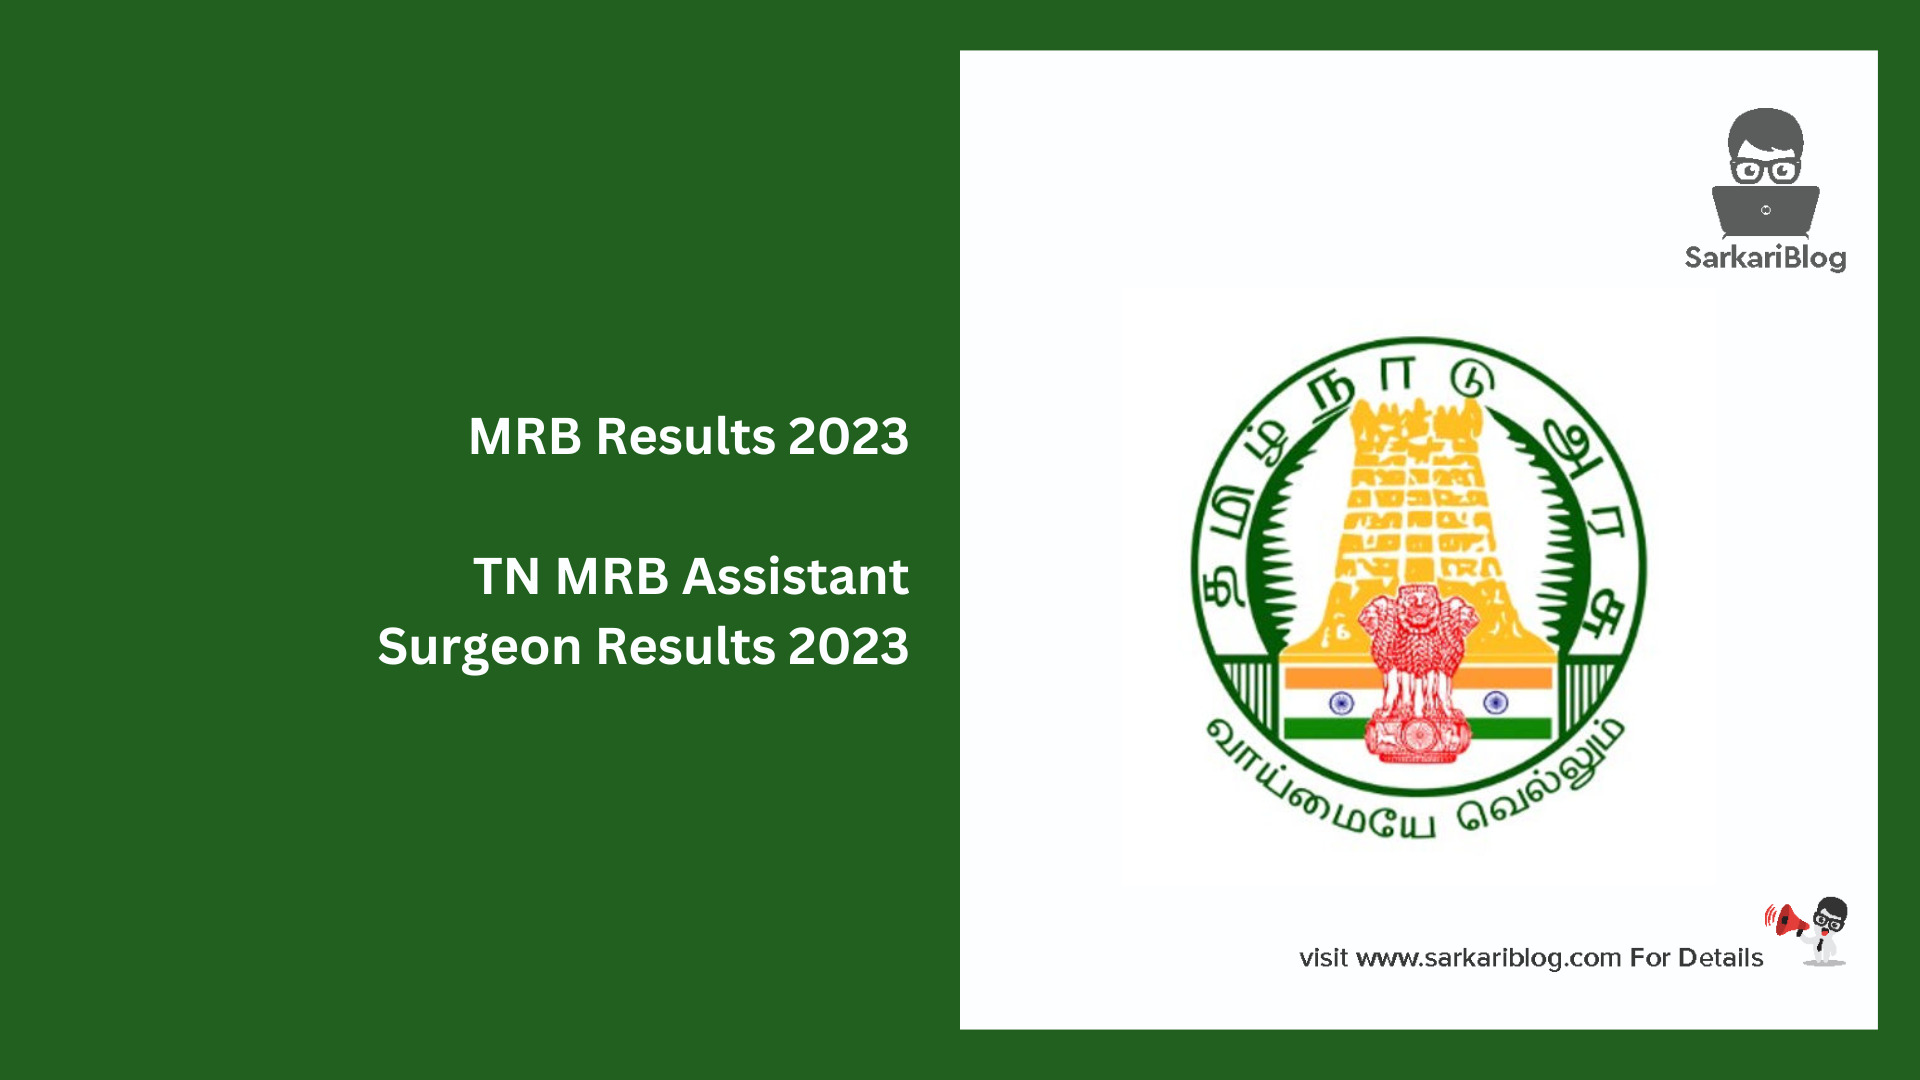 MRB Results 2023